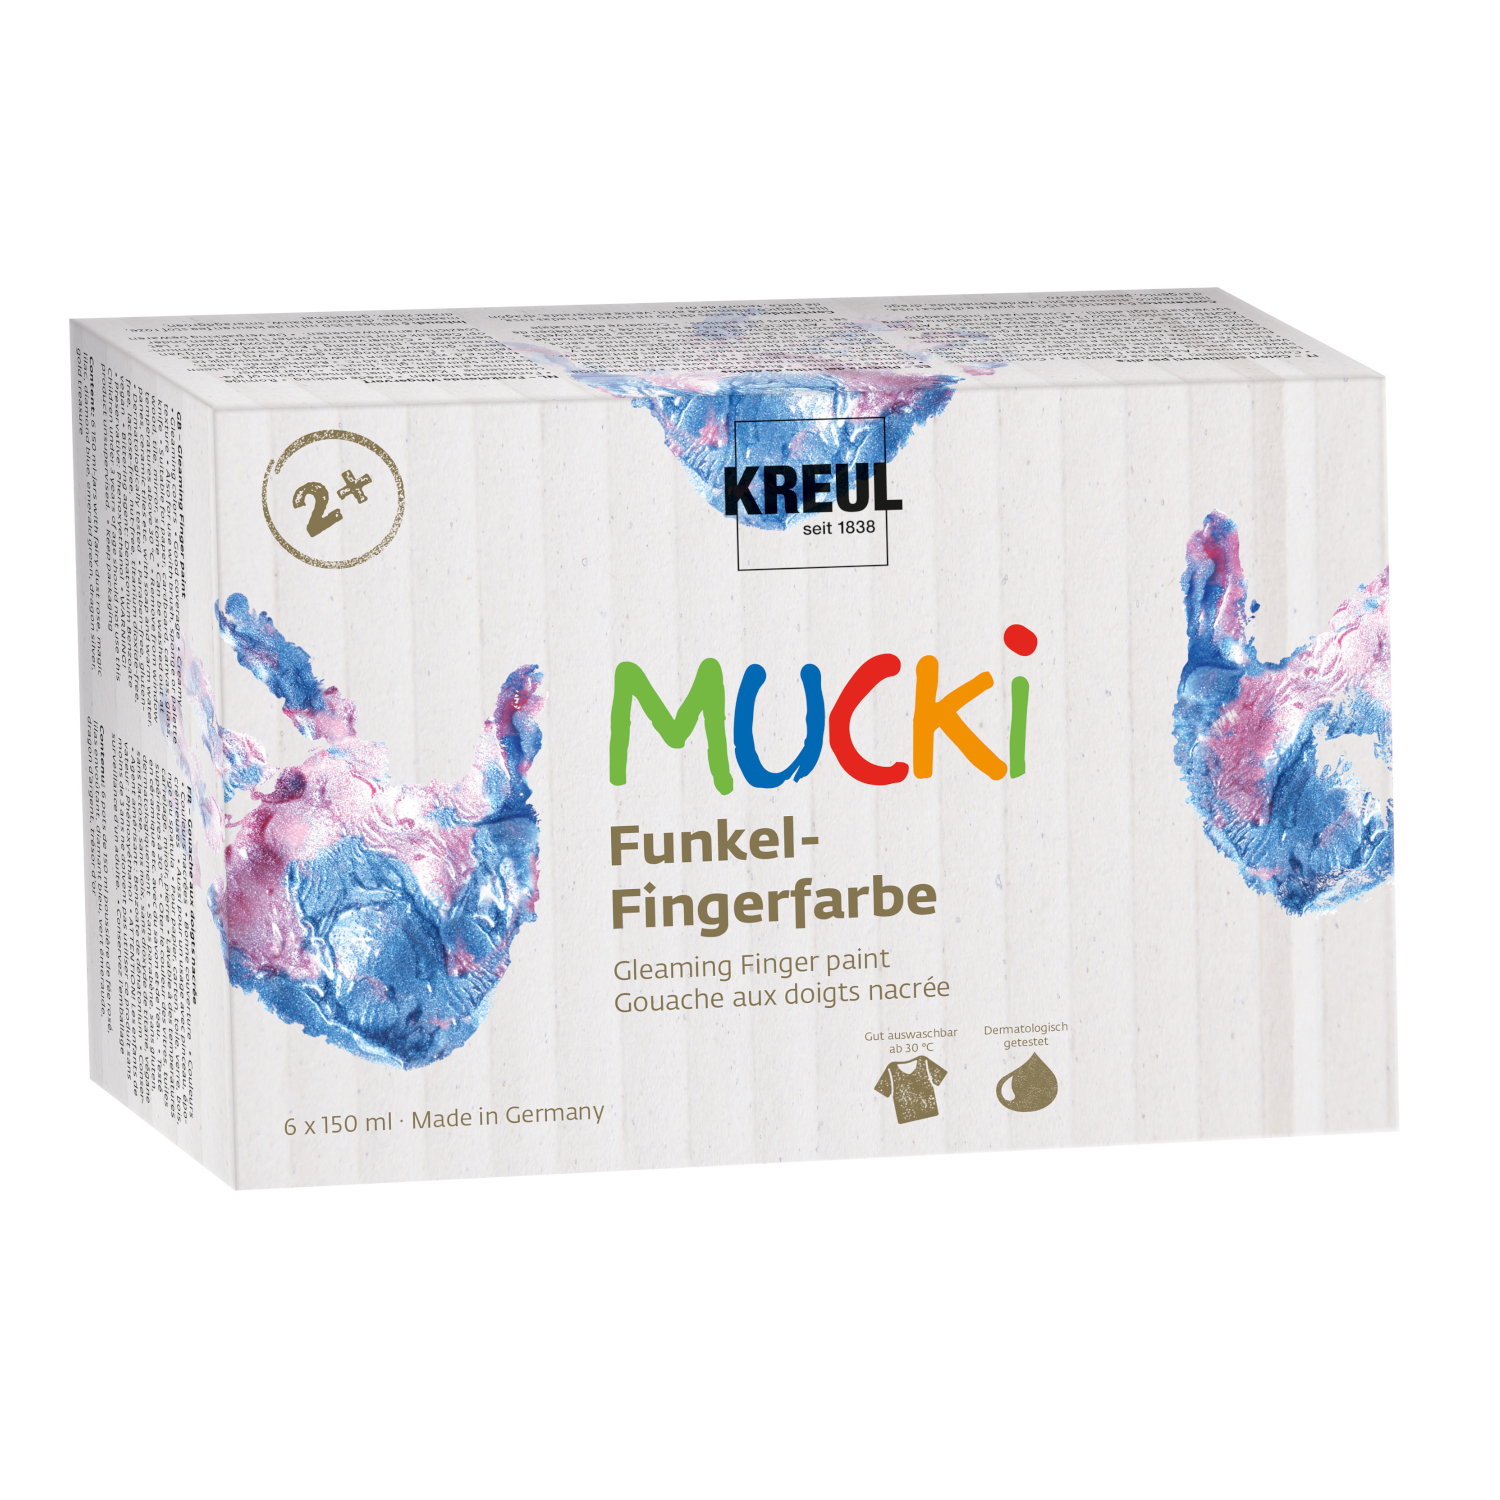 NEU Mucki Funkel-Fingerfarbe 6er Set 150 ml